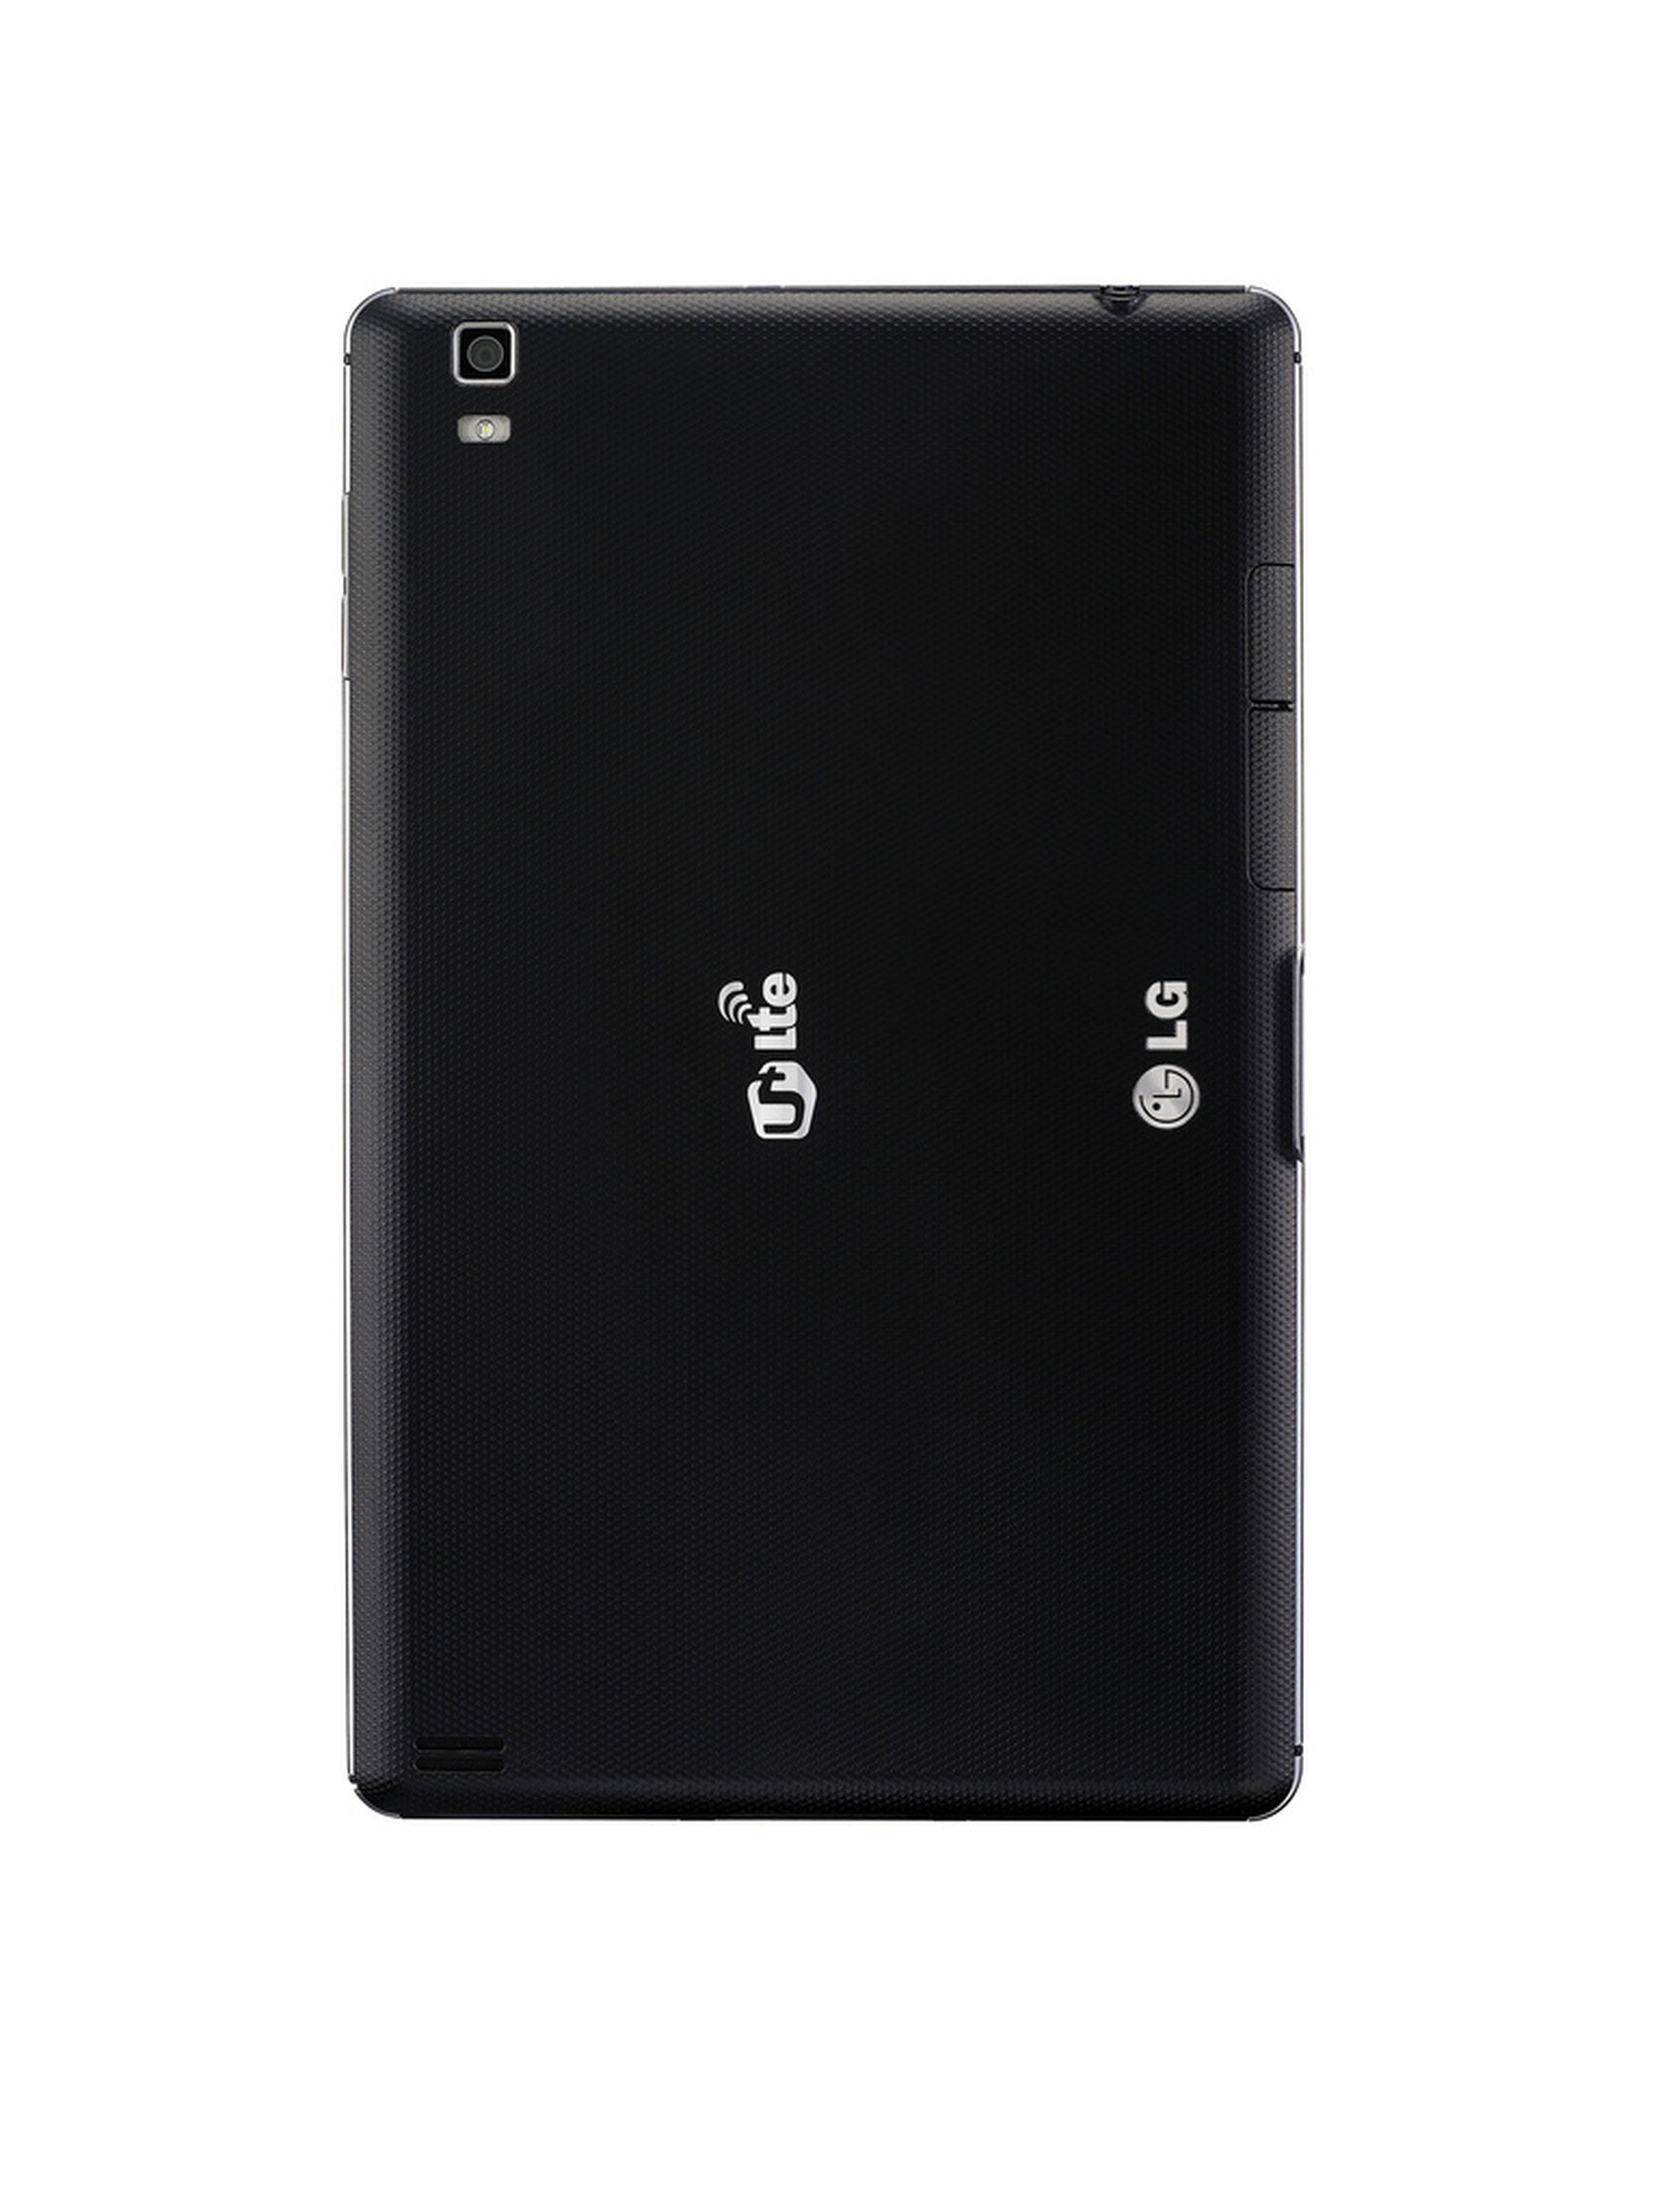 LG Optimus Pad LTE press images